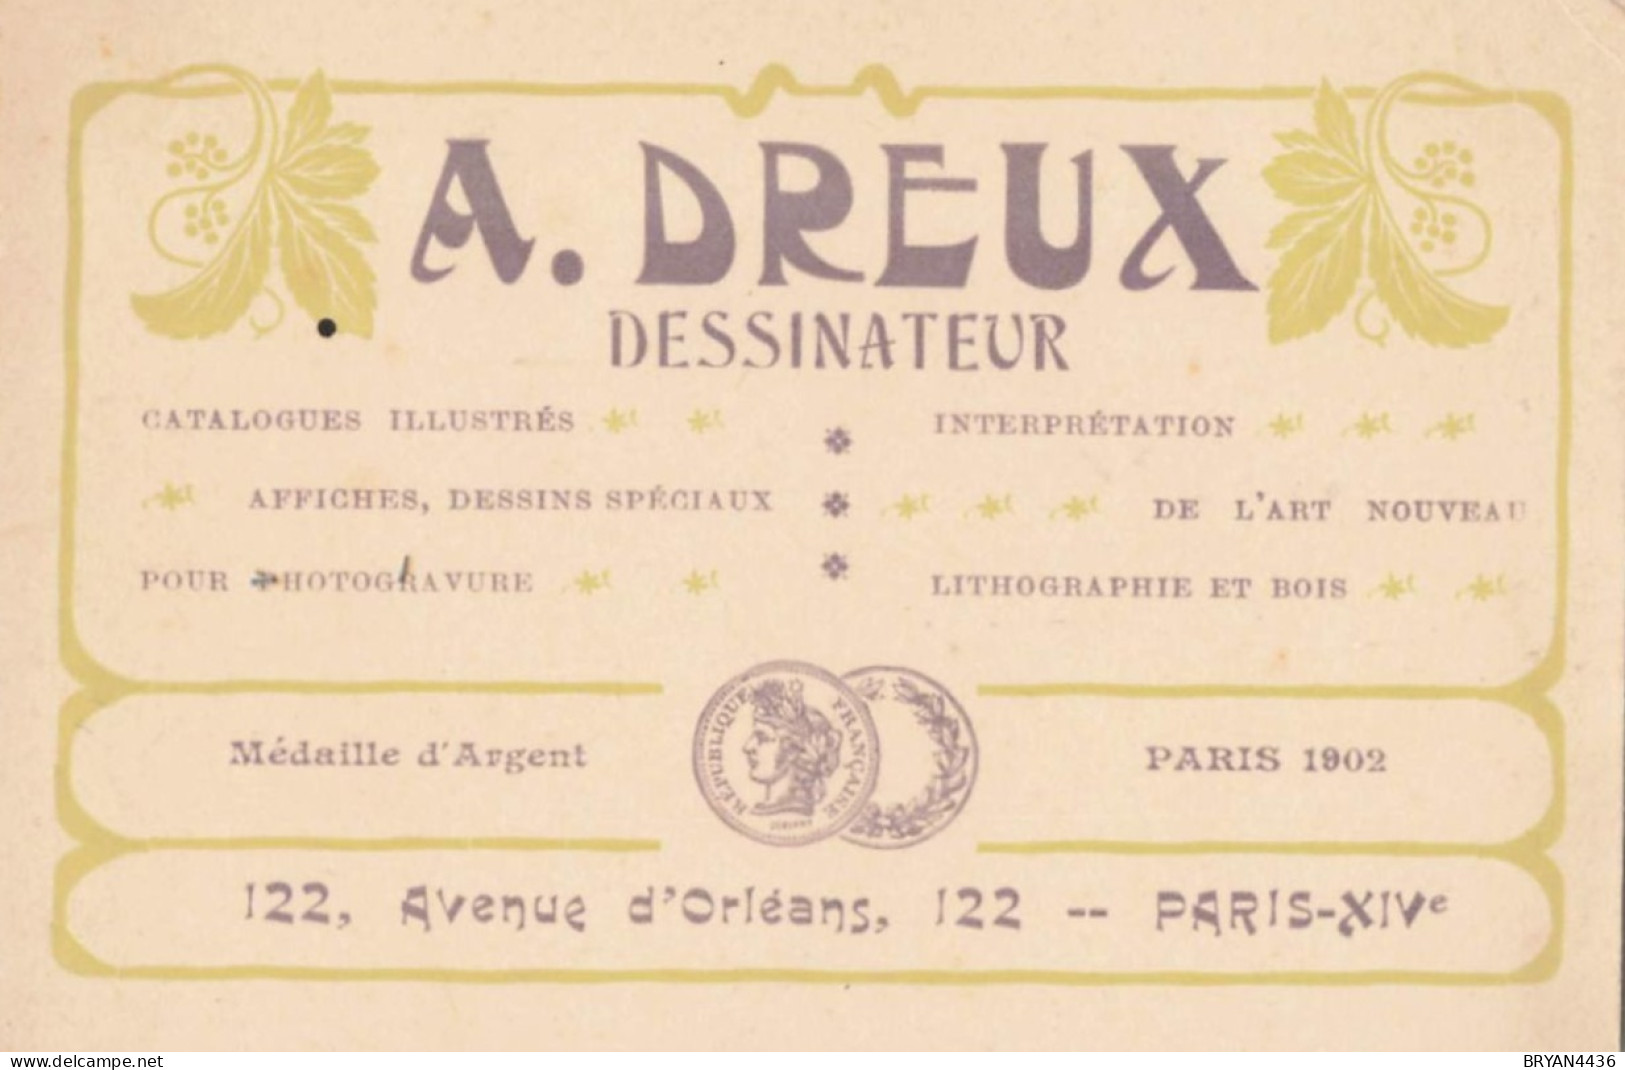 PARIS - 14 ème - DESSINATEUR  - A. DREUX - 122, AVENUE D' ORLEANS - CARTE COMMERCIALE ANCIENNE ART NOUVEAU - (8x12cm) - Arrondissement: 14